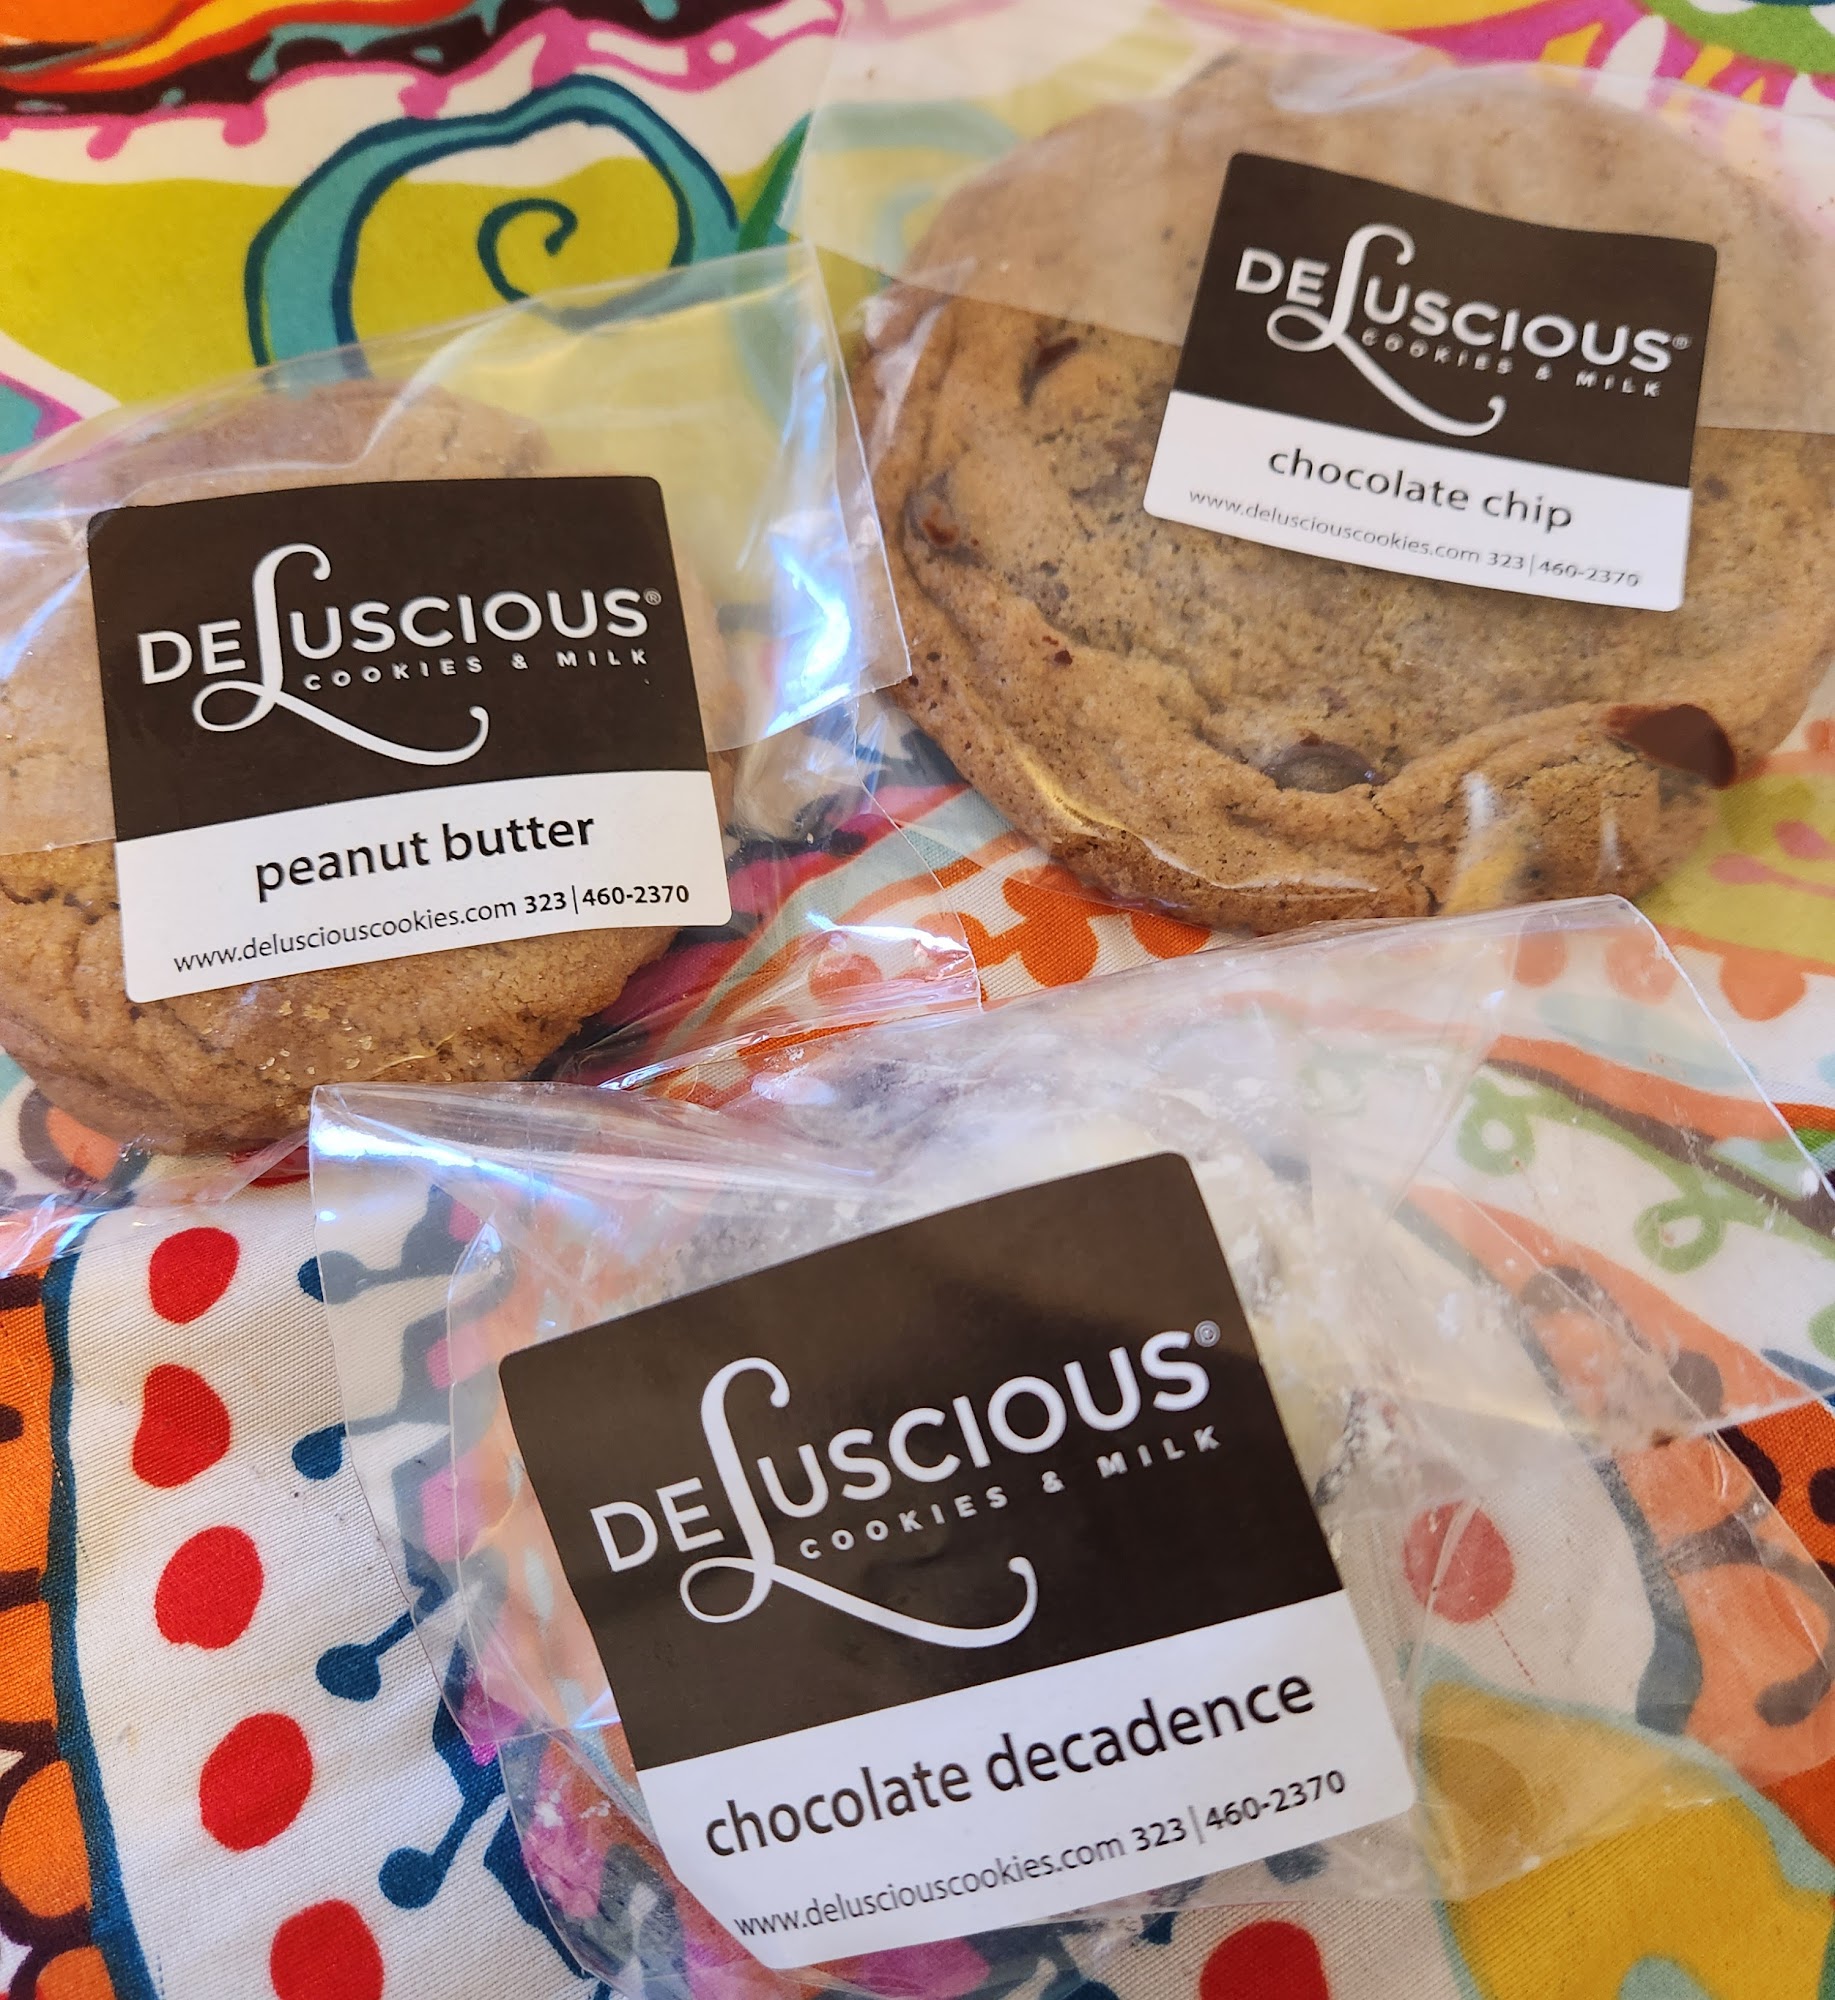 DeLuscious Cookies & Milk